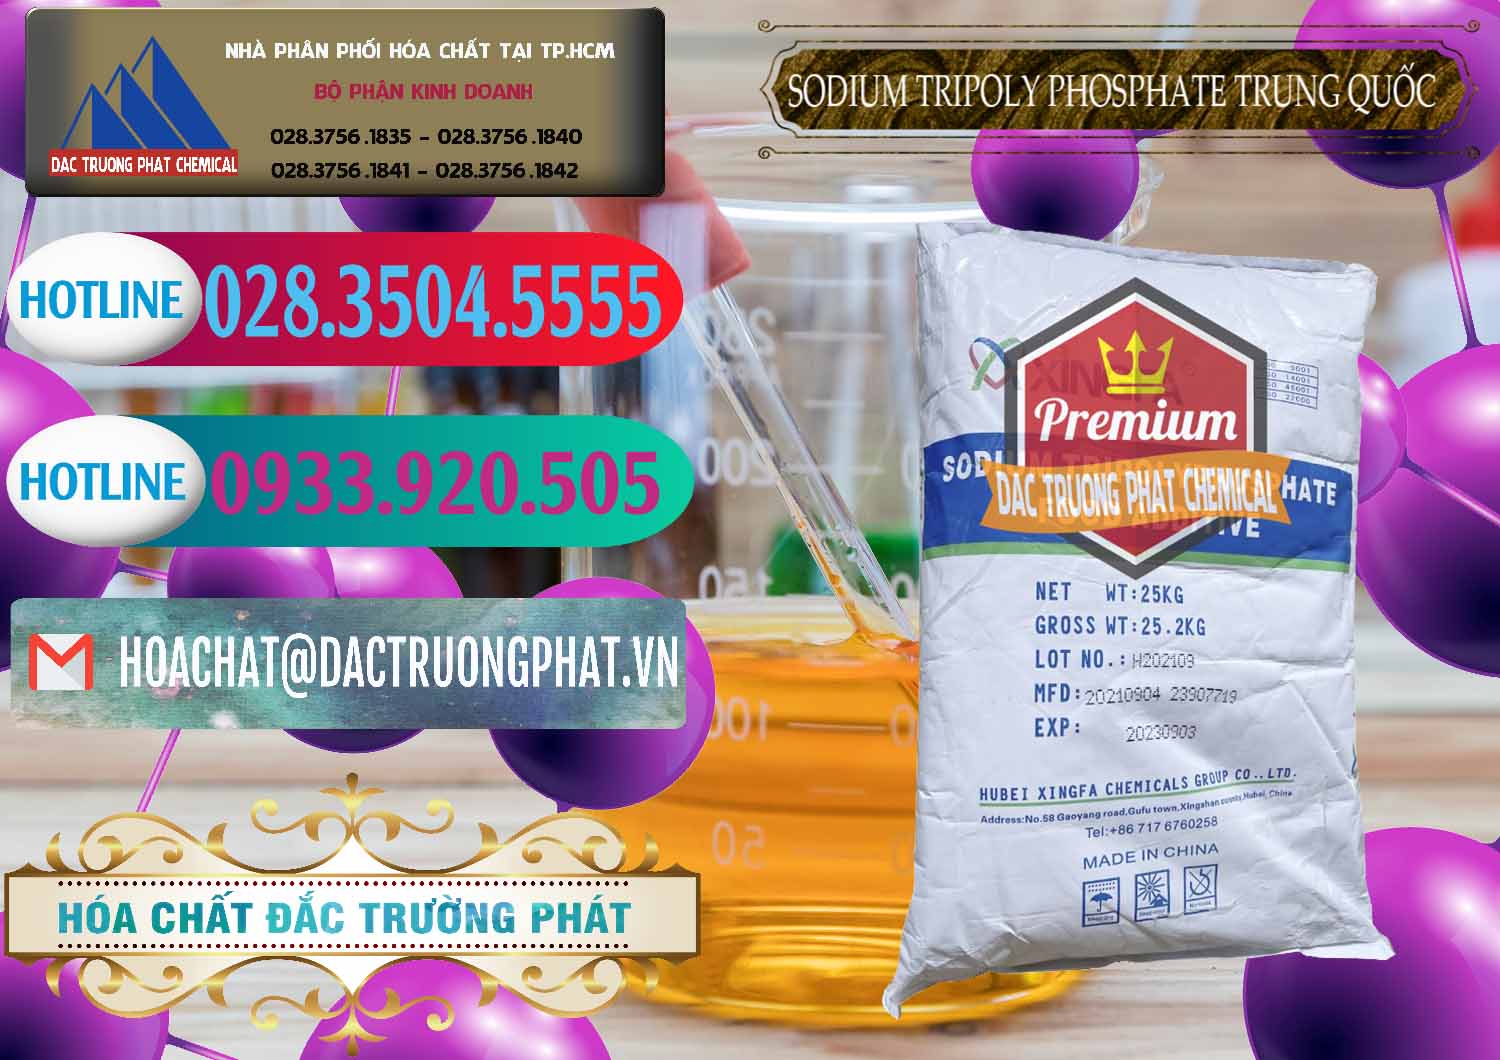 Cty chuyên cung ứng & bán Sodium Tripoly Phosphate - STPP 96% Xingfa Trung Quốc China - 0433 - Chuyên phân phối _ cung ứng hóa chất tại TP.HCM - truongphat.vn